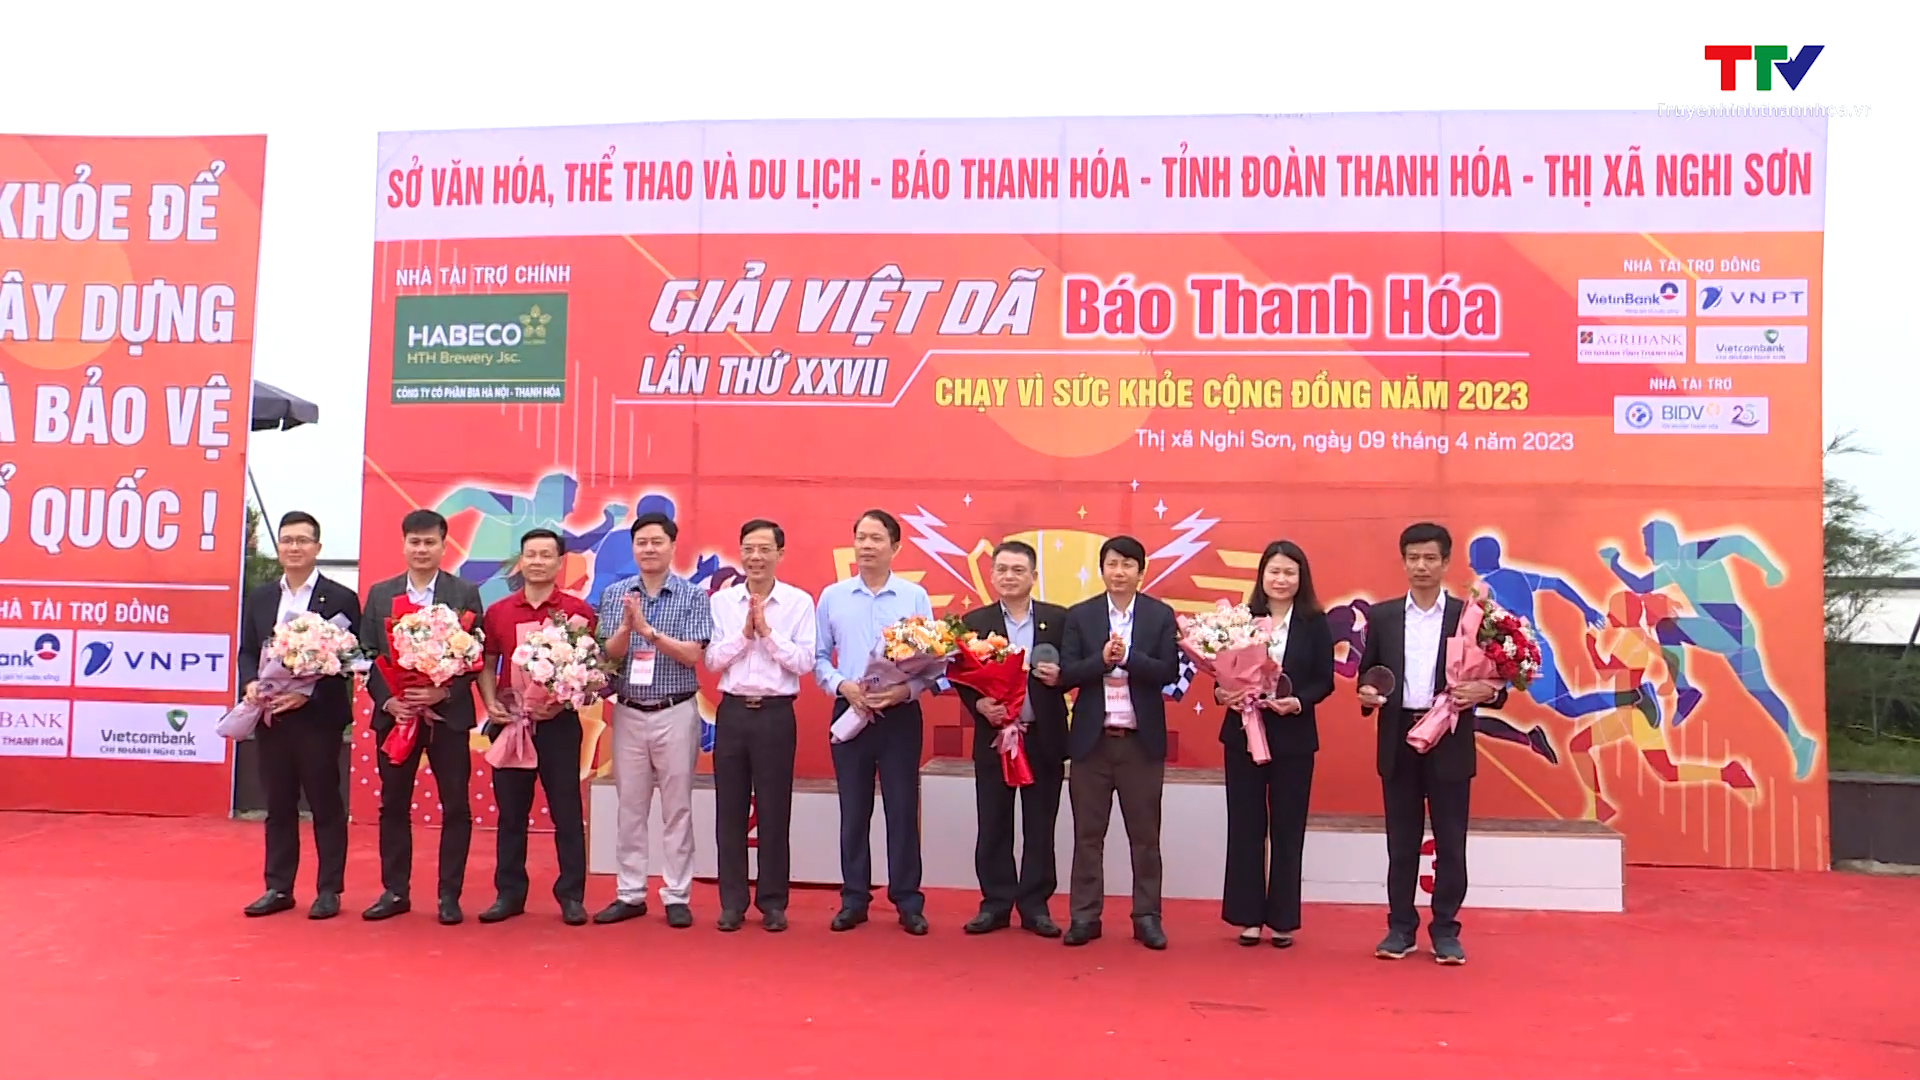 Giải Việt dã Báo Thanh Hóa “Chạy vì sức khỏe cộng đồng” lần thứ XXVII – năm 2023 - Ảnh 3.